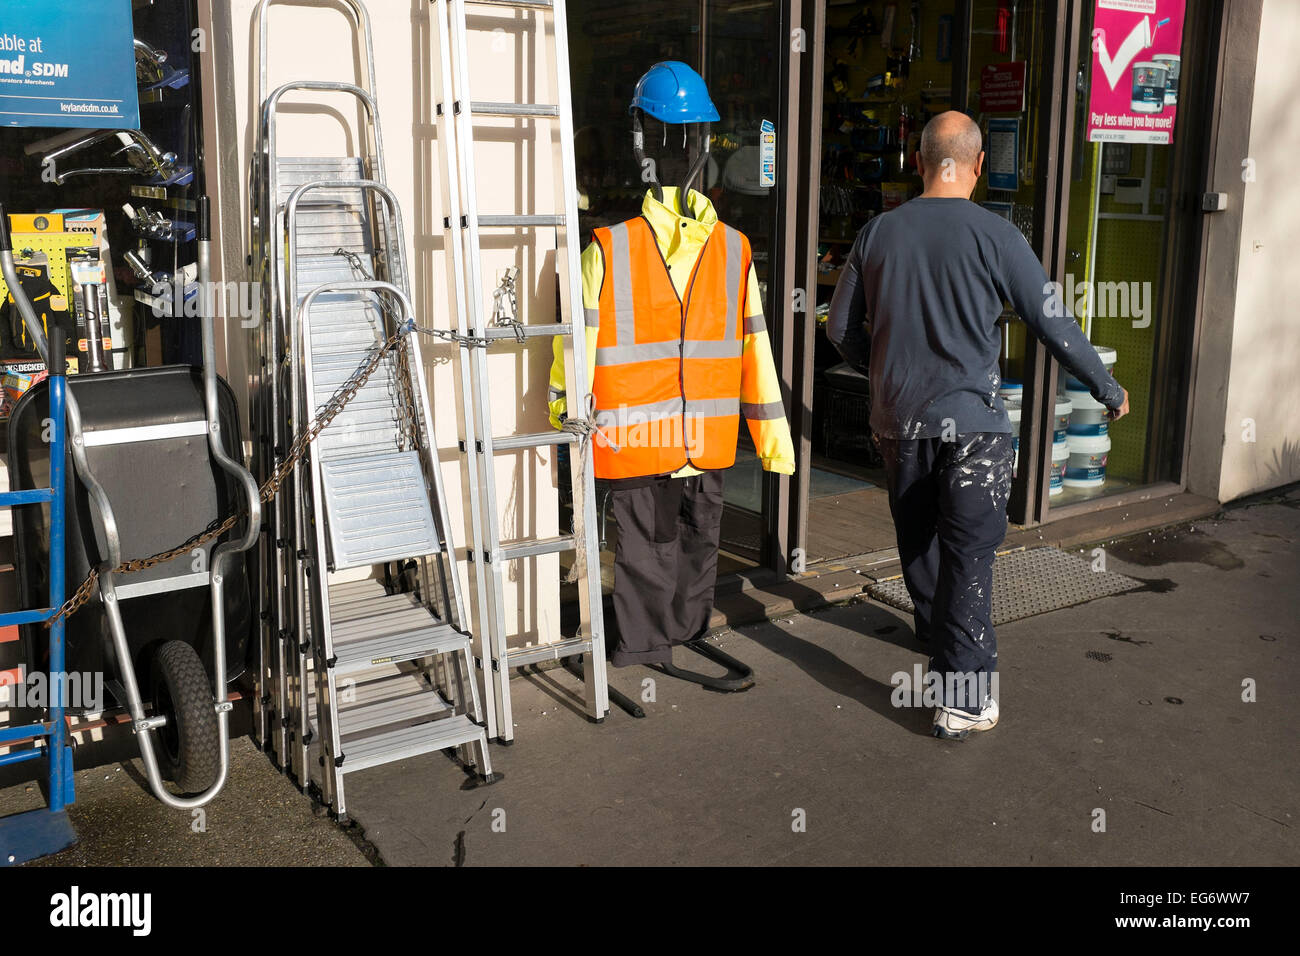 Mann, der eine ähnliche Größe geht vorbei an Sicherheitskleidung Show vor einem Hardwear-Geschäft. Wie zwei Figuren von echten und falschen Arten. London, UK. Stockfoto